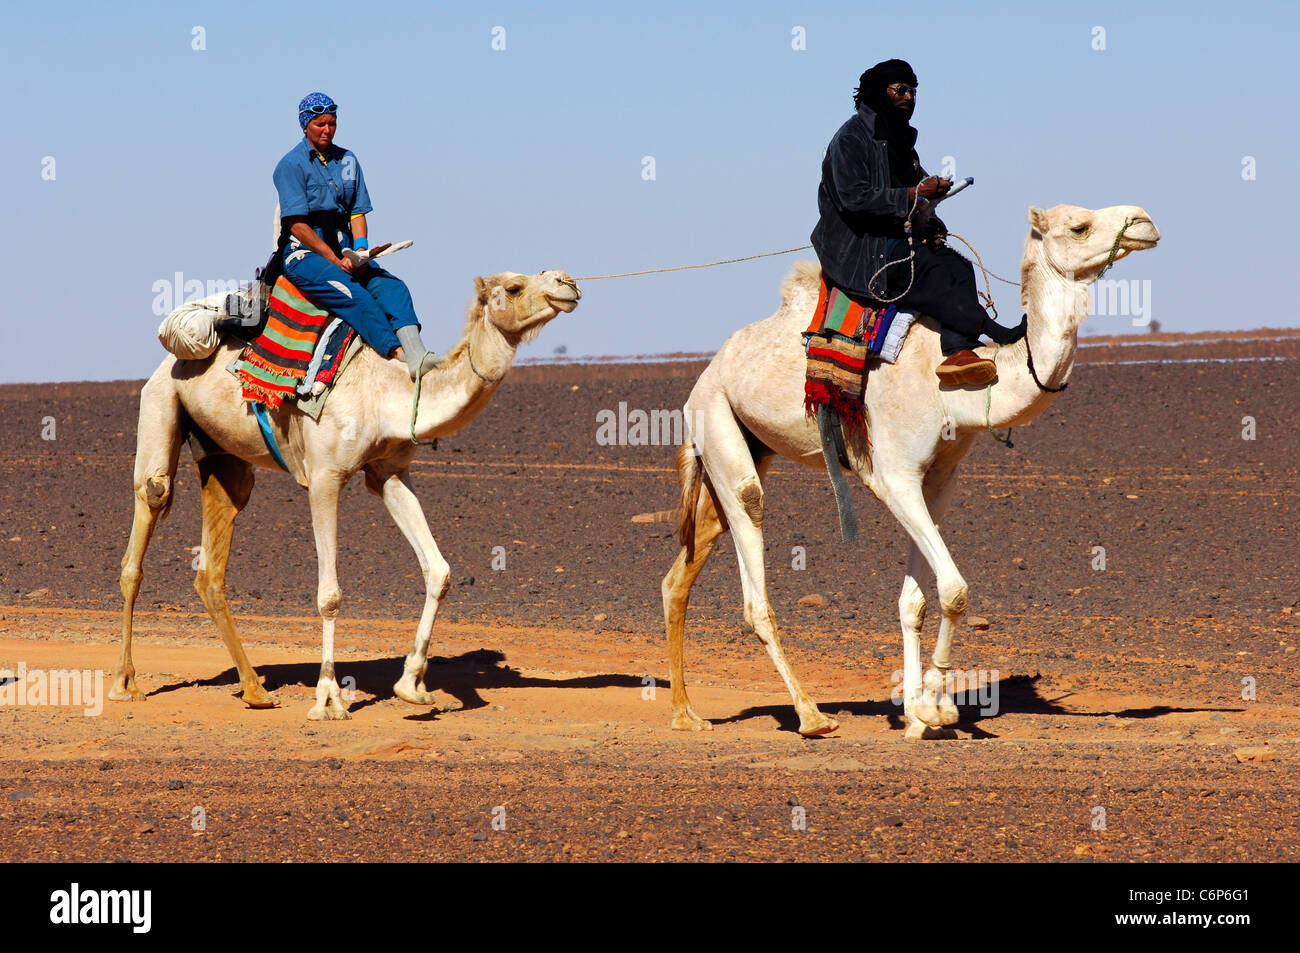 Nomade Touareg et un guide touristique épuisé sur leur droemdaries pendant un désert rode dans le désert du Sahara, la Libye Banque D'Images